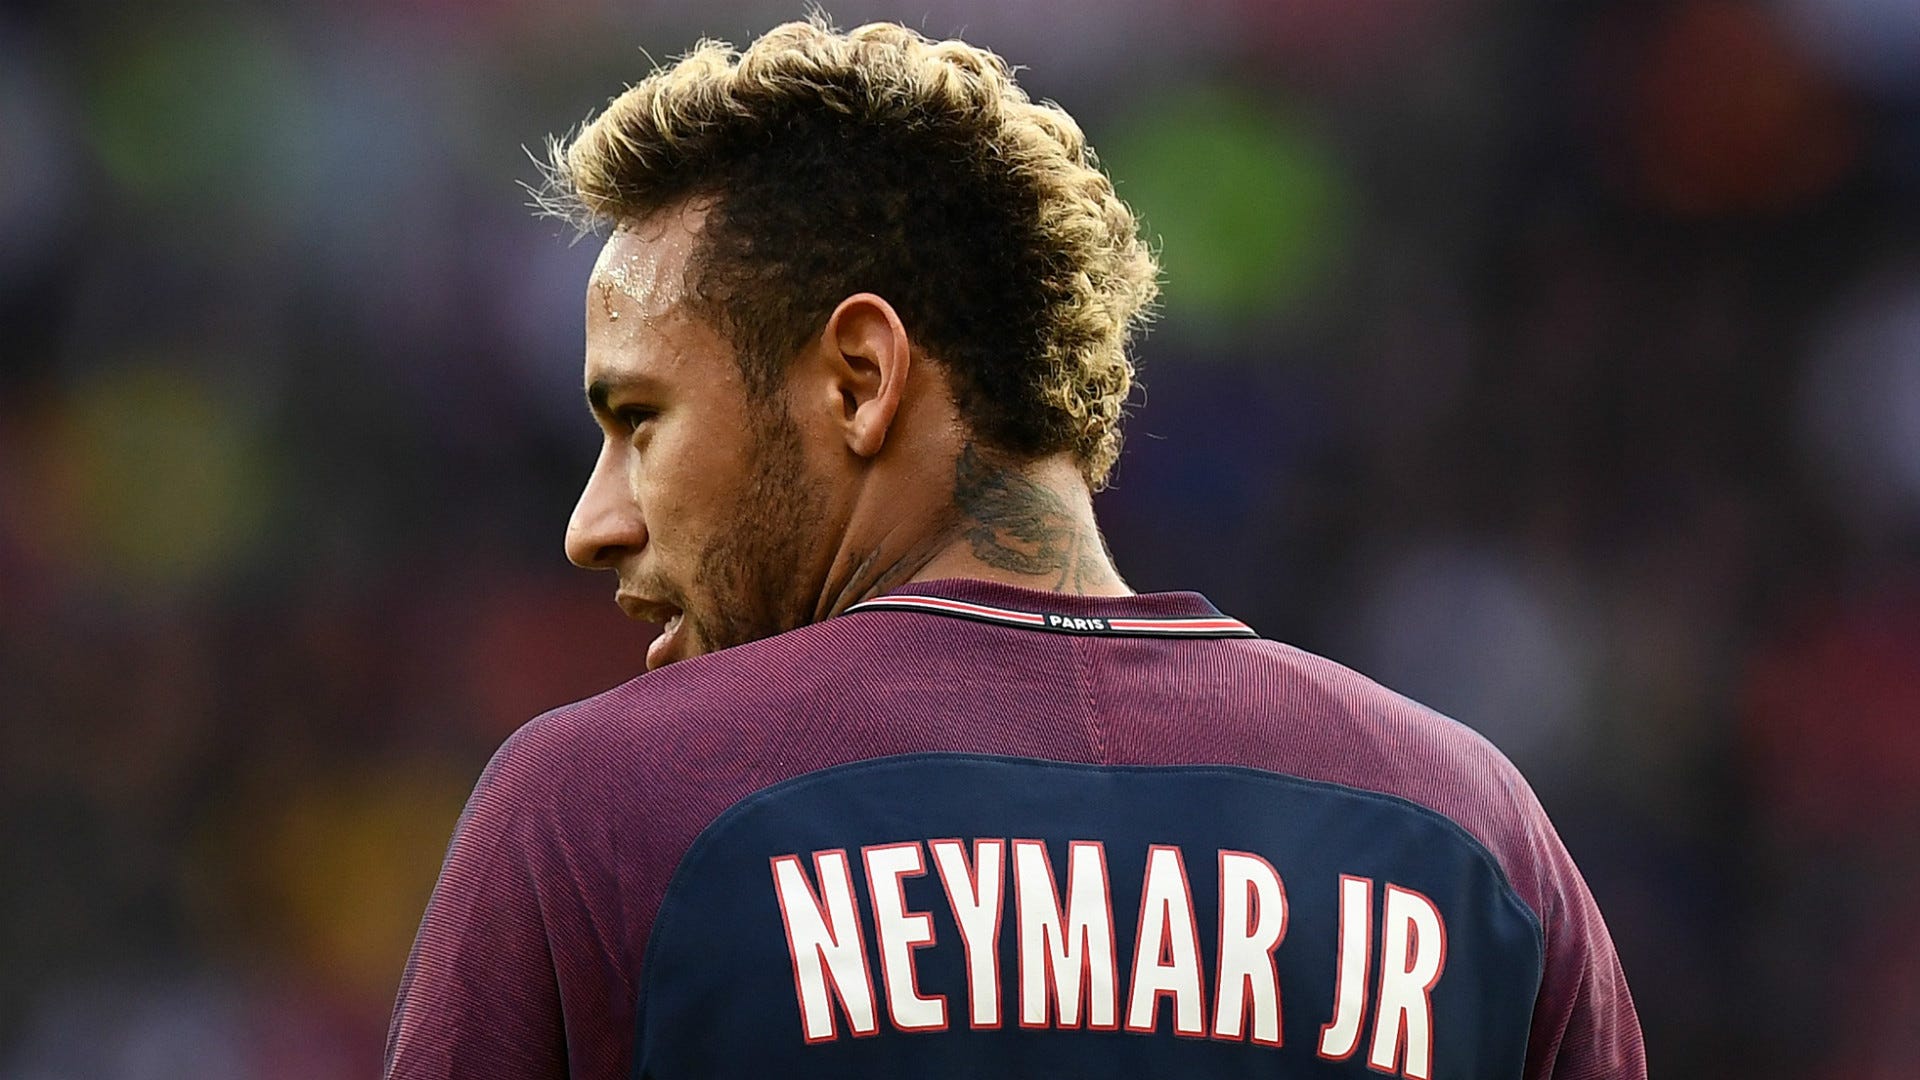 Neymar: Hãy xem hình ảnh đầy sức sống của Neymar khi anh ta nhanh chóng vượt qua đối thủ trên sân bóng. Được mệnh danh là một trong những cầu thủ bóng đá có tài năng nhất thế giới, Neymar đến từ Brazil đã khẳng định được tên tuổi của mình trên mỗi trận đấu.